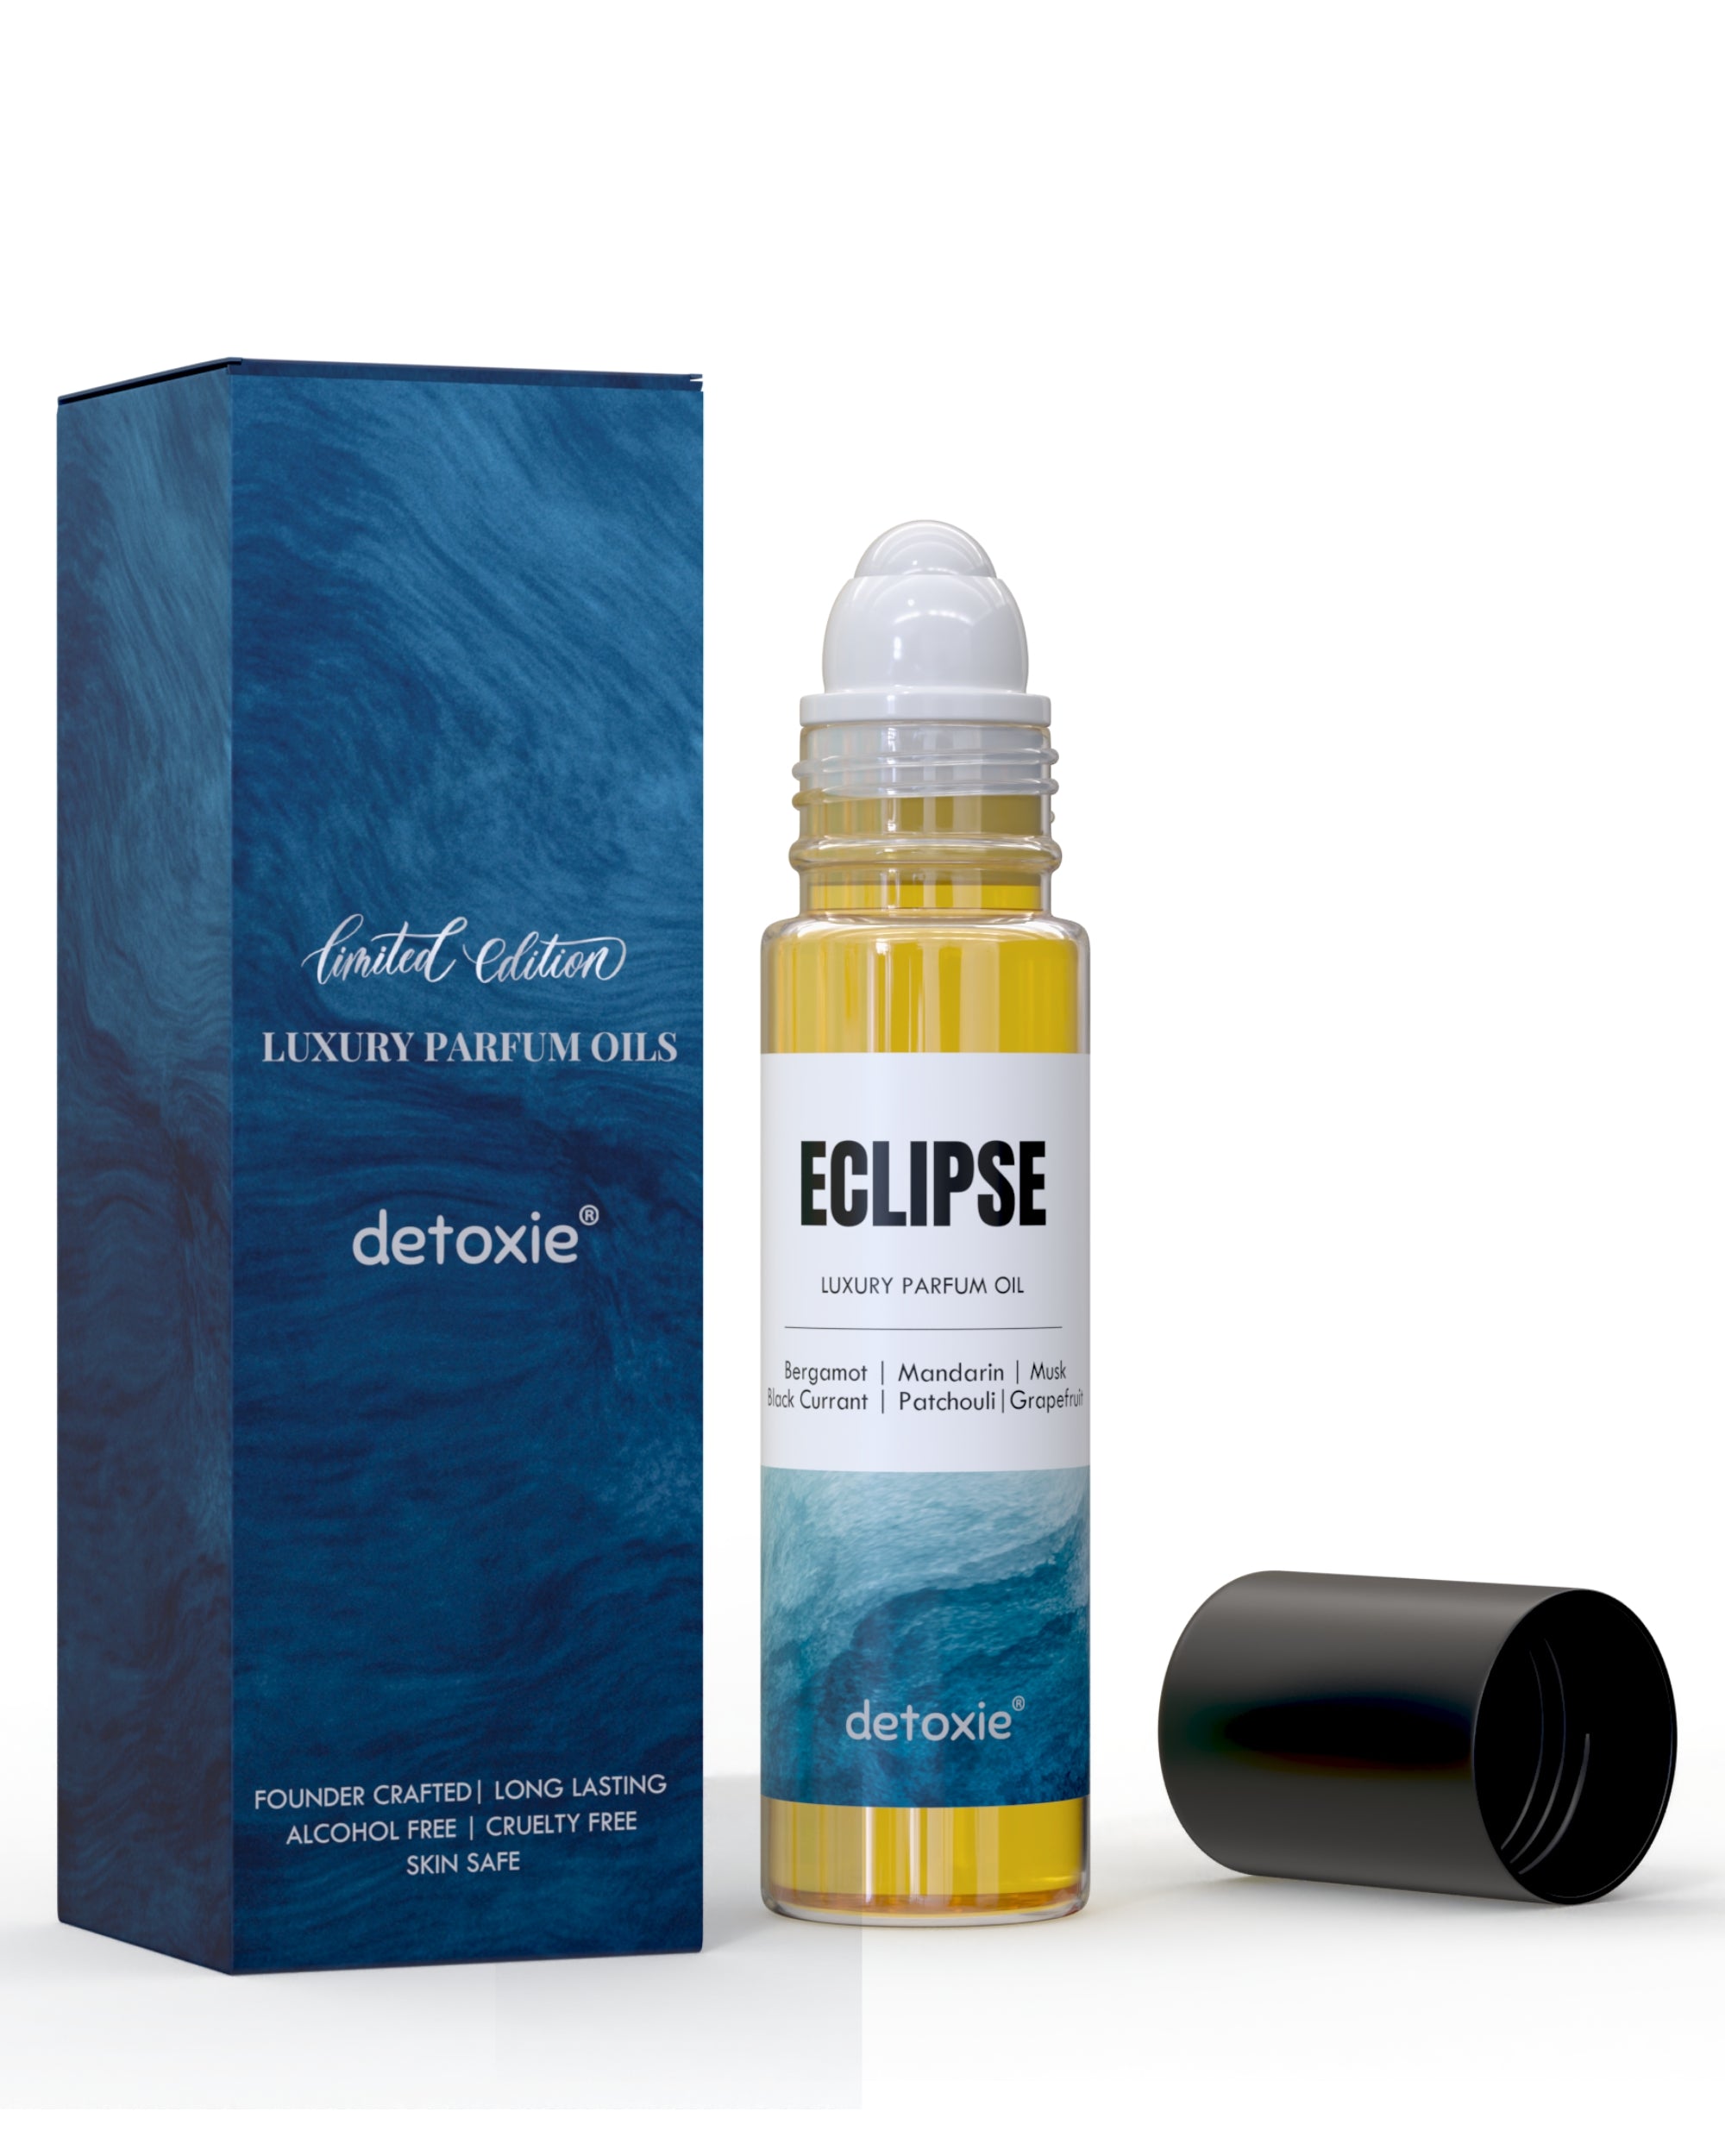 Eclipse - Luxury Parfum Oil (Attar)